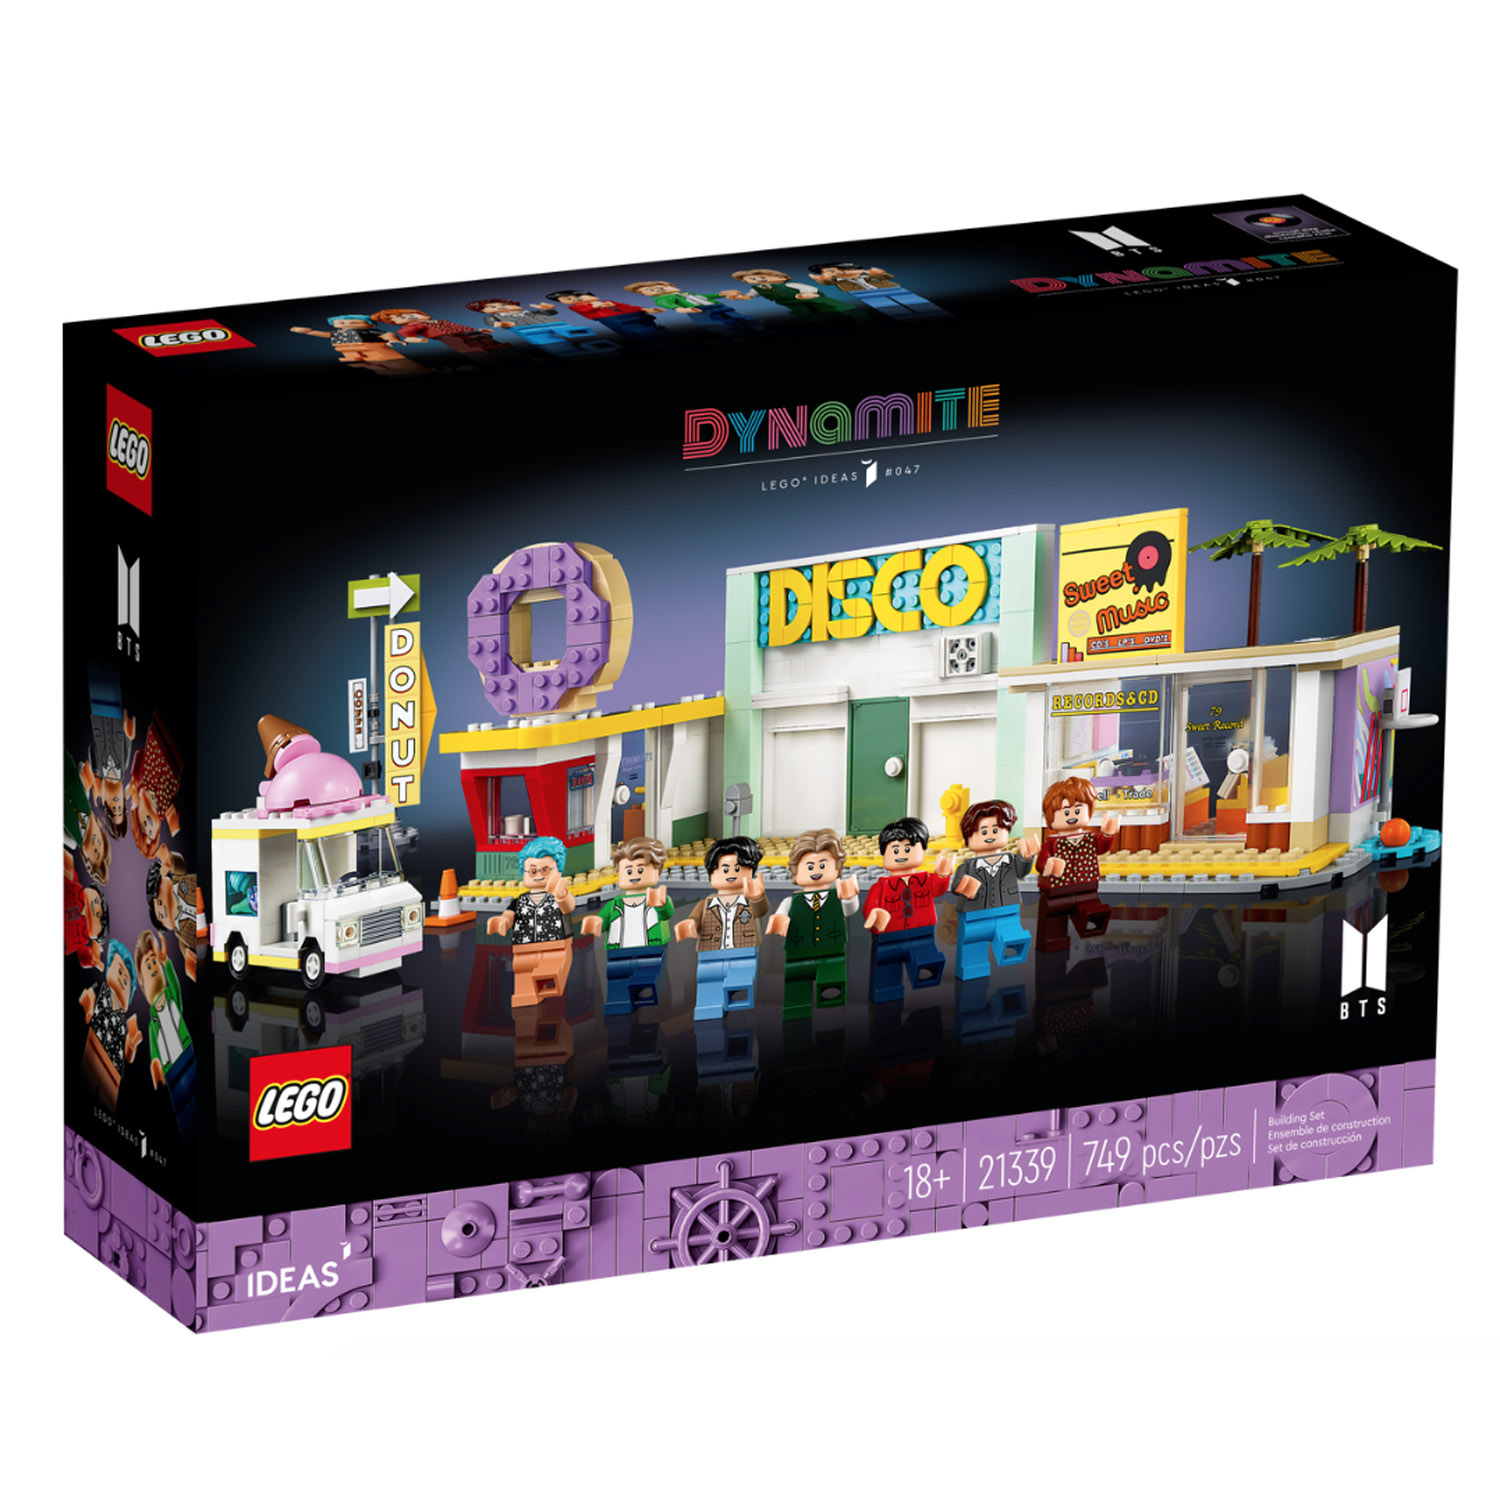 Lego 21339 Ideas BTS Dynamite